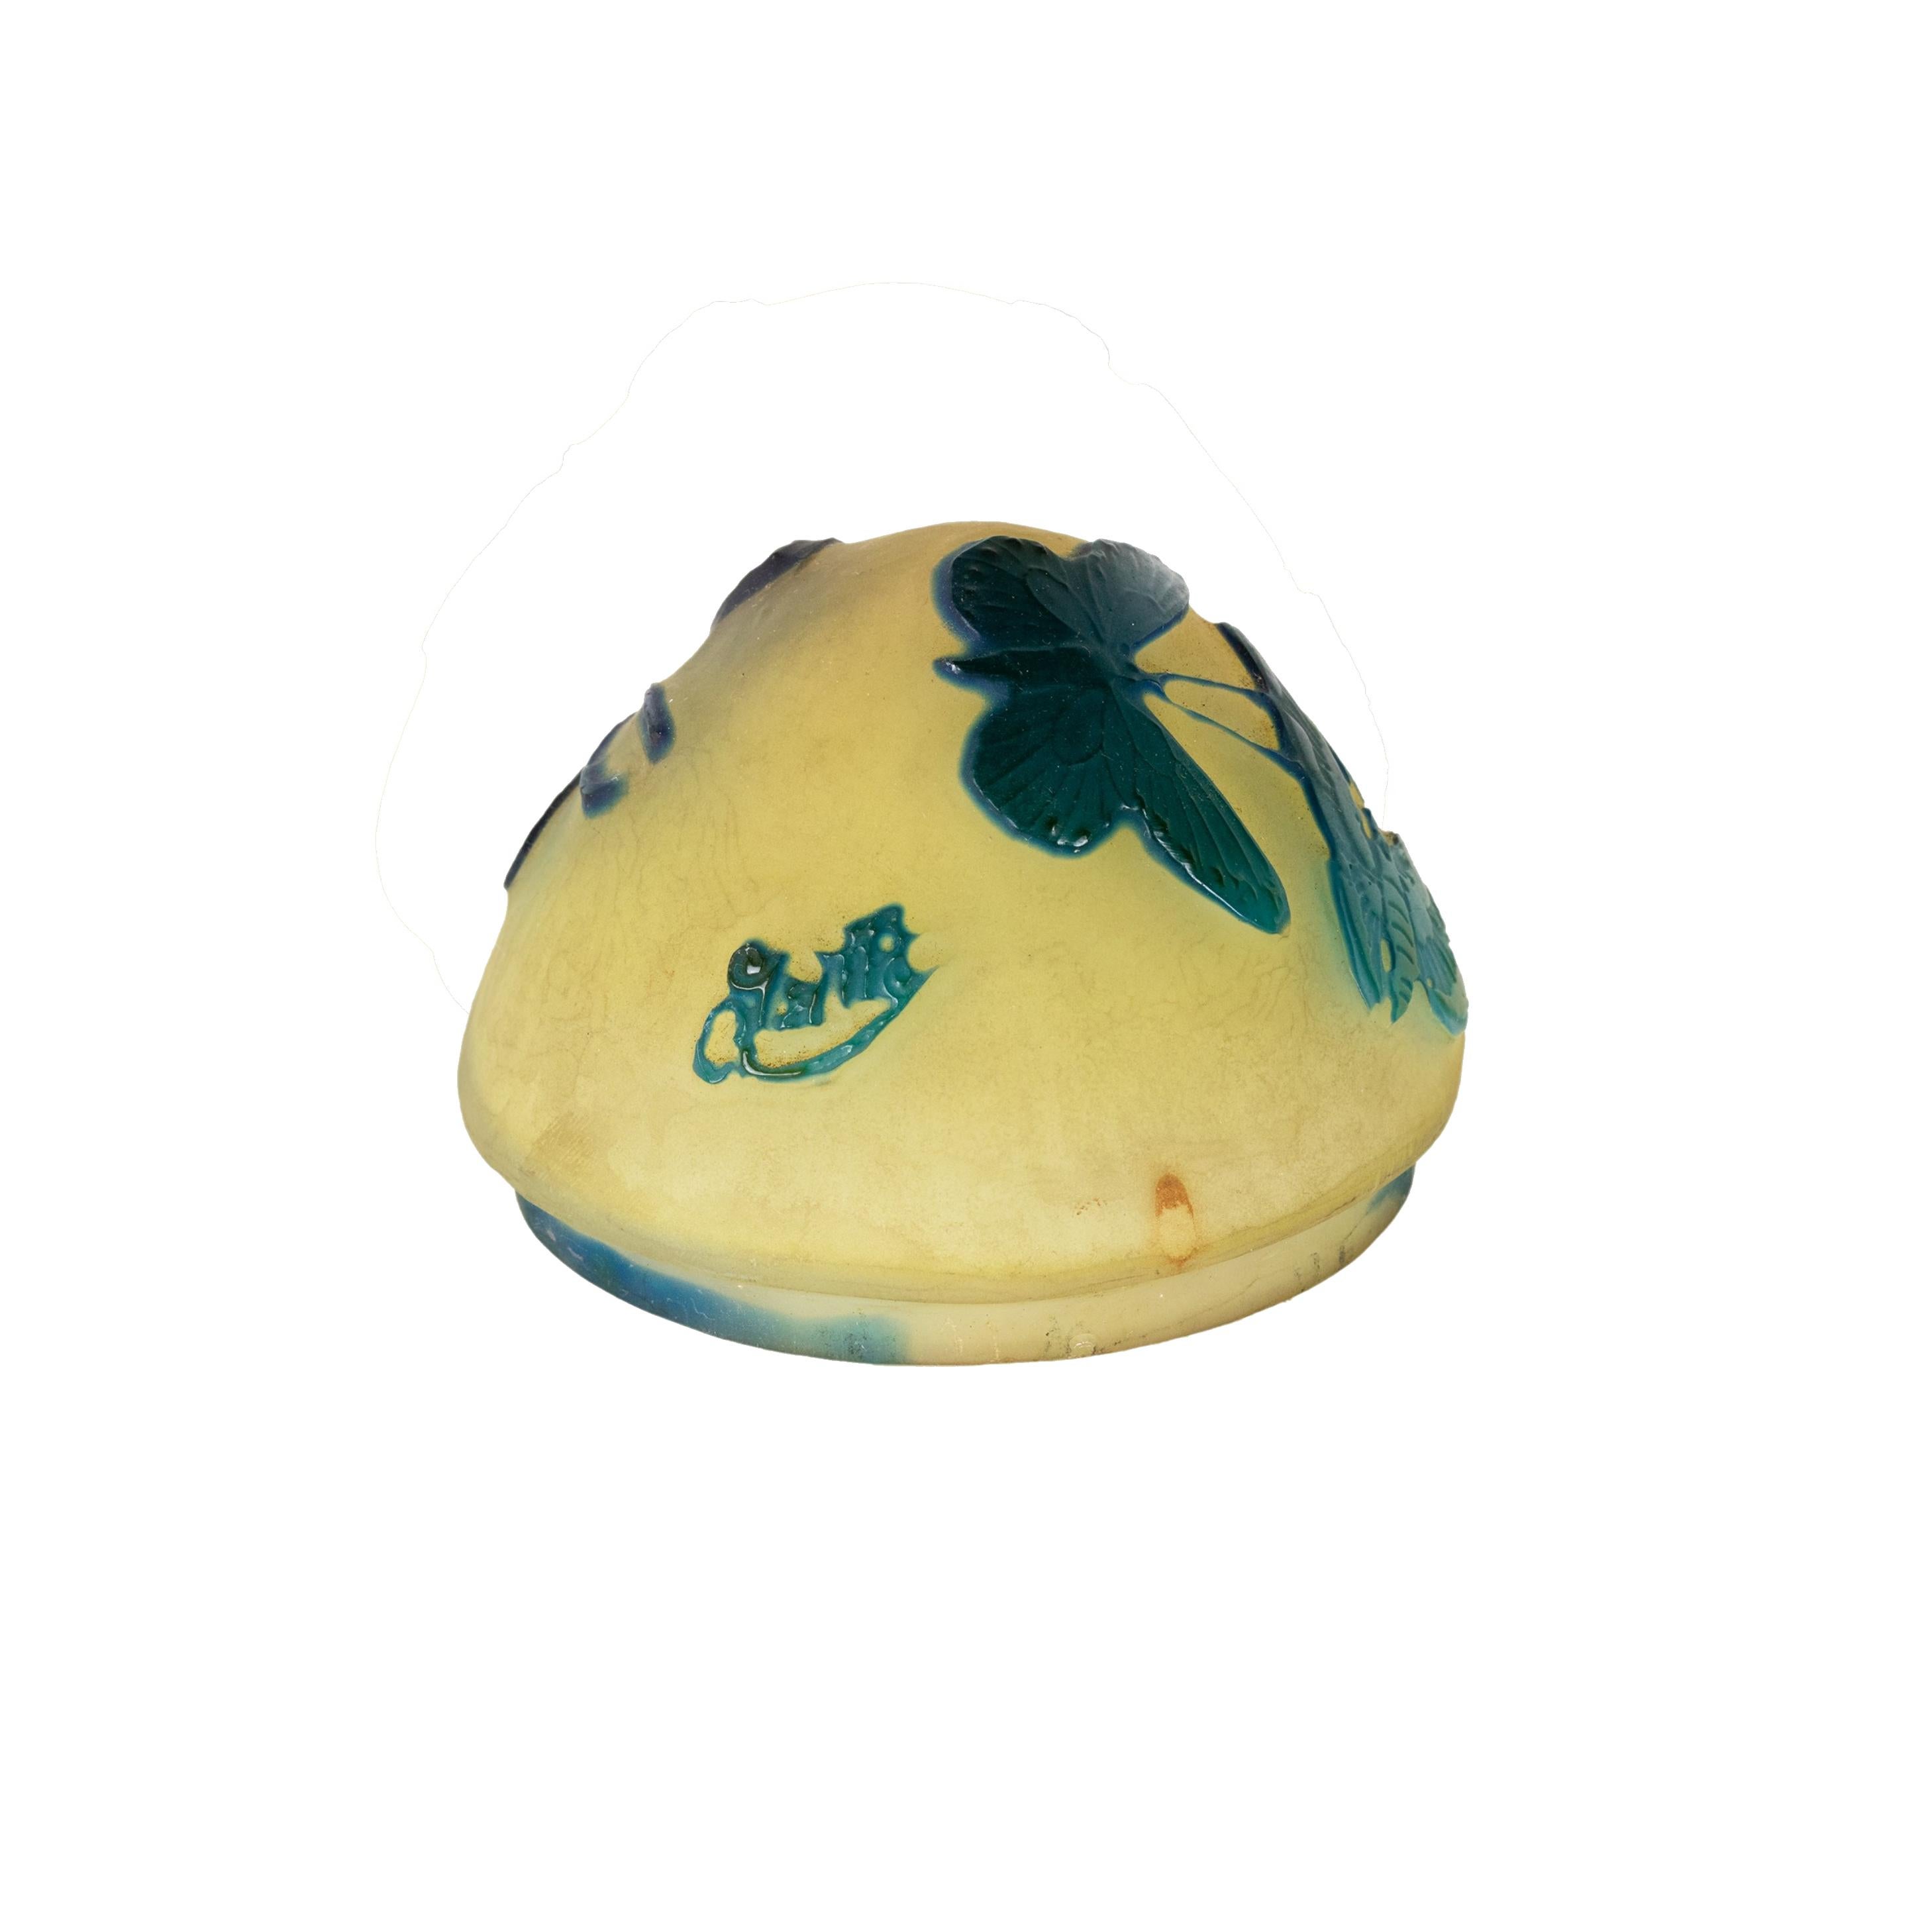 Rare lampe de table abajour en verre gravé à l'acide en camée avec un motif de papillon sur un fond opaque jaune.
Circa 1904 
Signature 